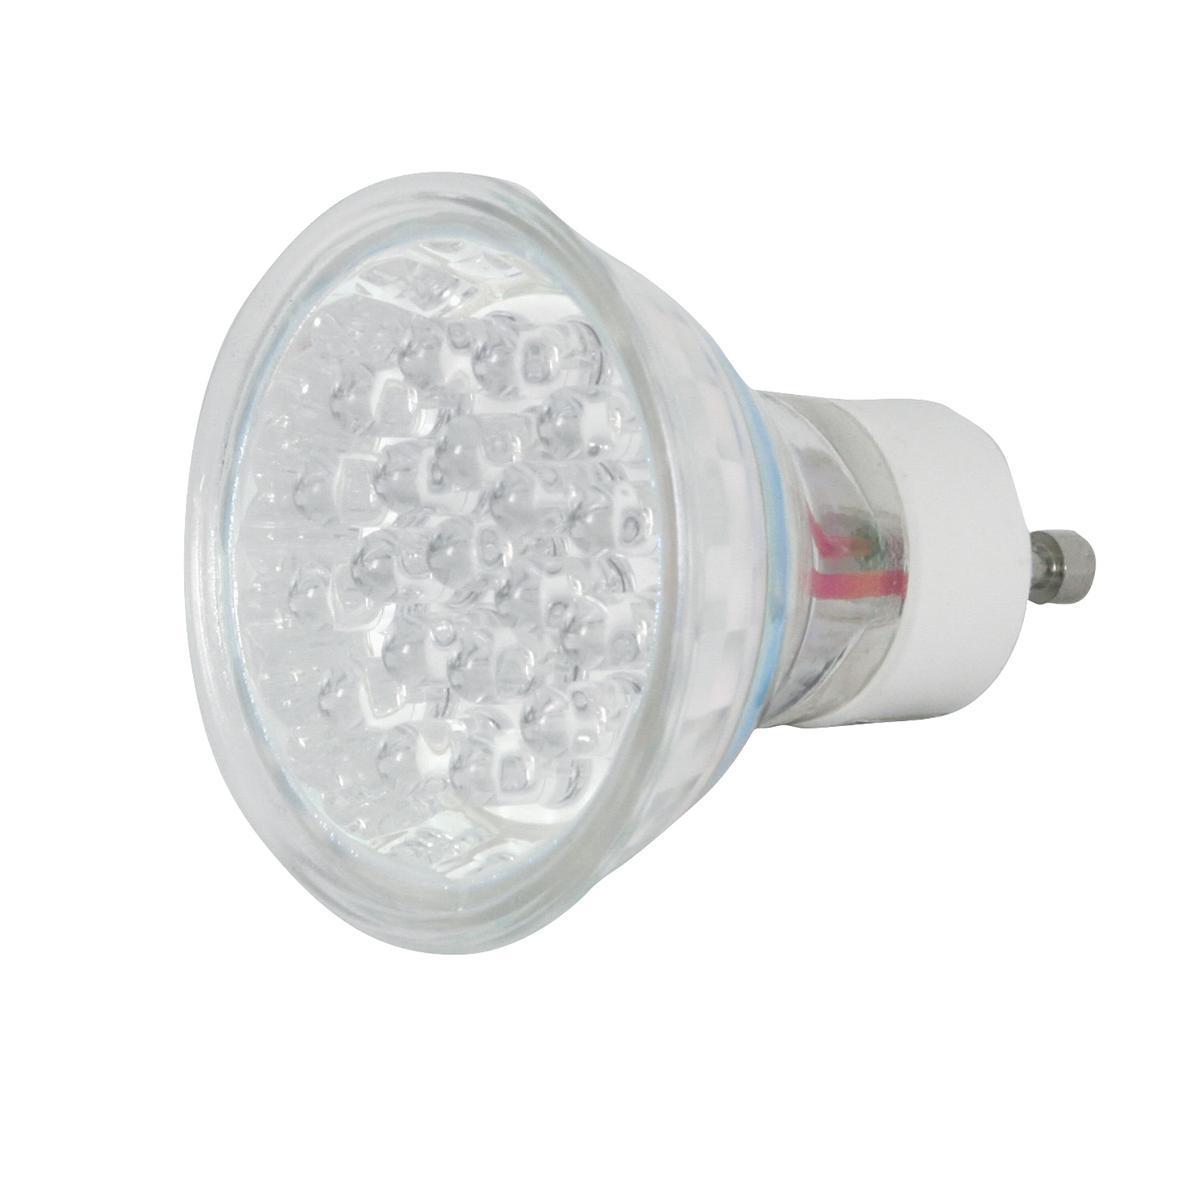 Ampoule spot 20 LED GU10 - 5 x 5 x 5 cm - Transparent